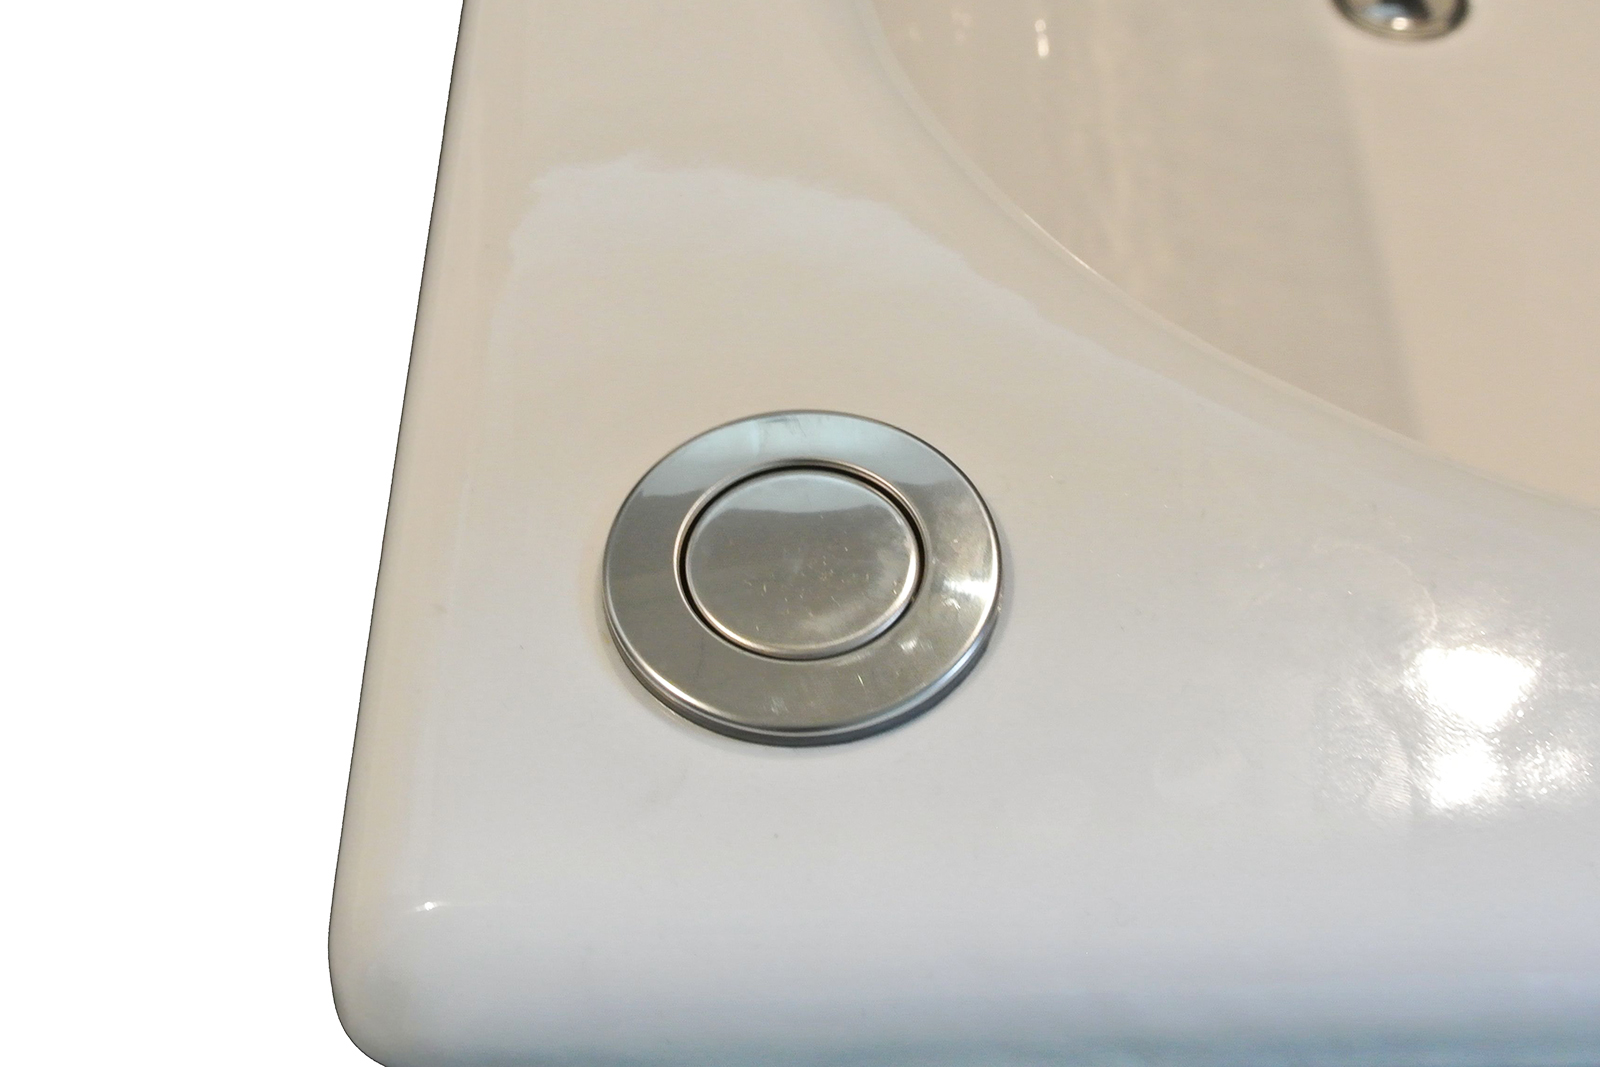 鋳物ホーロー浴槽 1172 スタンドタイプ KB-BT004-02-G122 ワンプッシュ排水栓。浴槽の設置位置によって「左向き」か「右向き」かをご選択ください